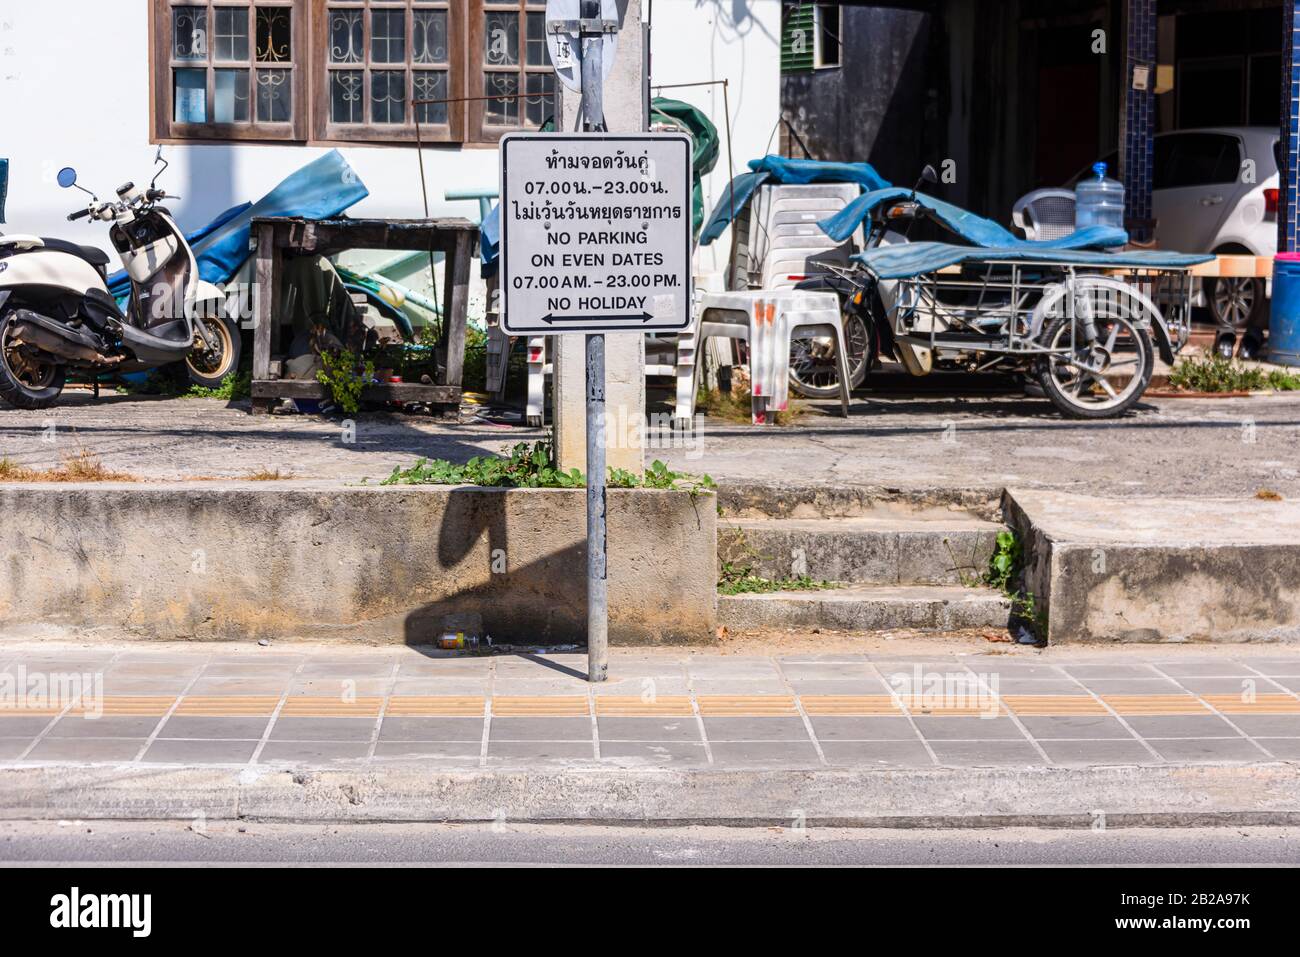 Pas de panneau indiquant aux automobilistes de ne pas se garer même à partir de 7:00 à 23:00. Kata Village, Phuket, Thaïlande Banque D'Images